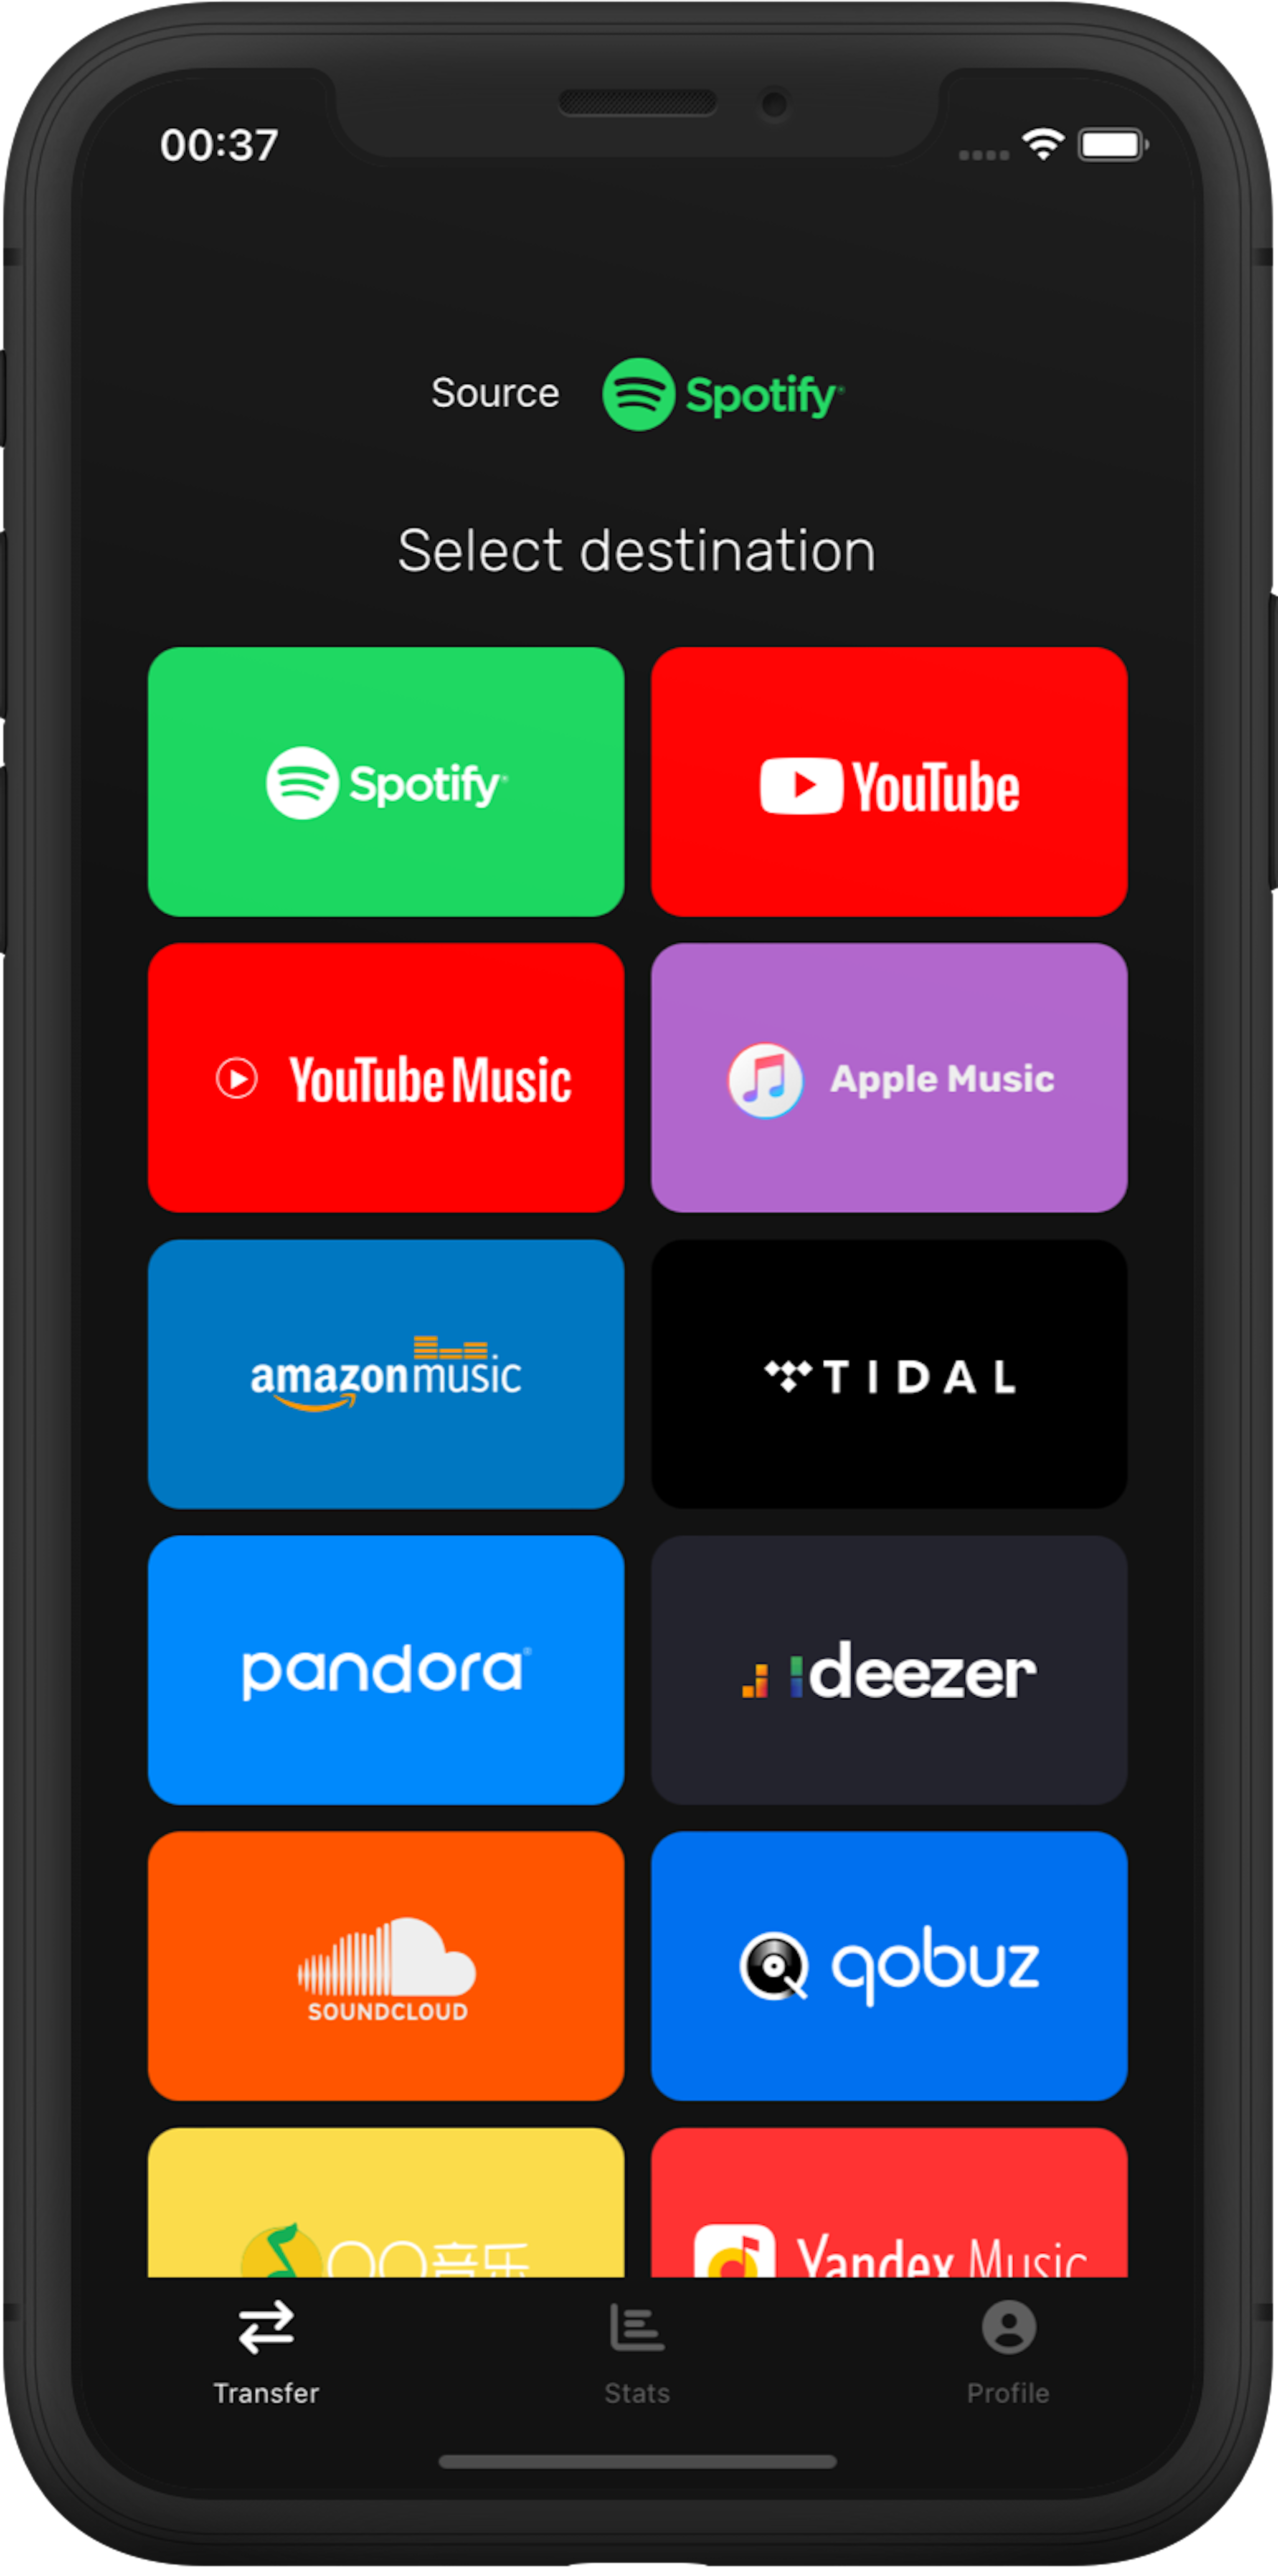 Step 2: Select Qobuz as a destination music platform